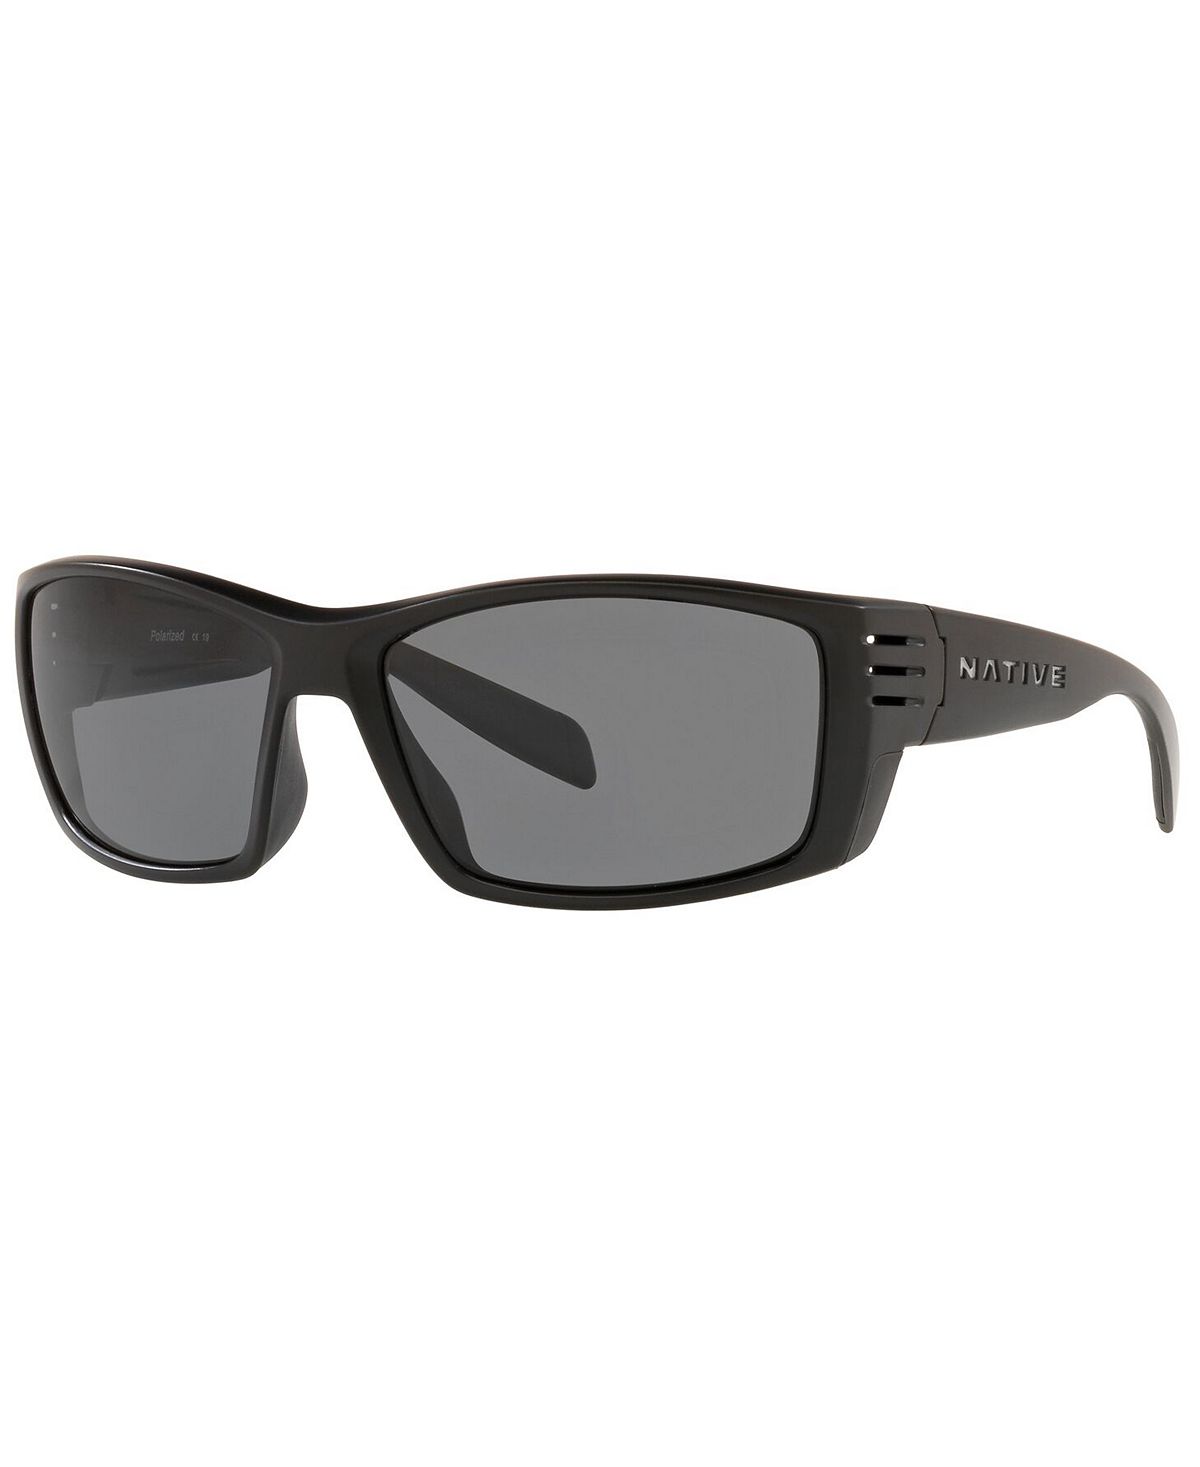 Мужские поляризованные солнцезащитные очки Native, XD9019 61 Native Eyewear